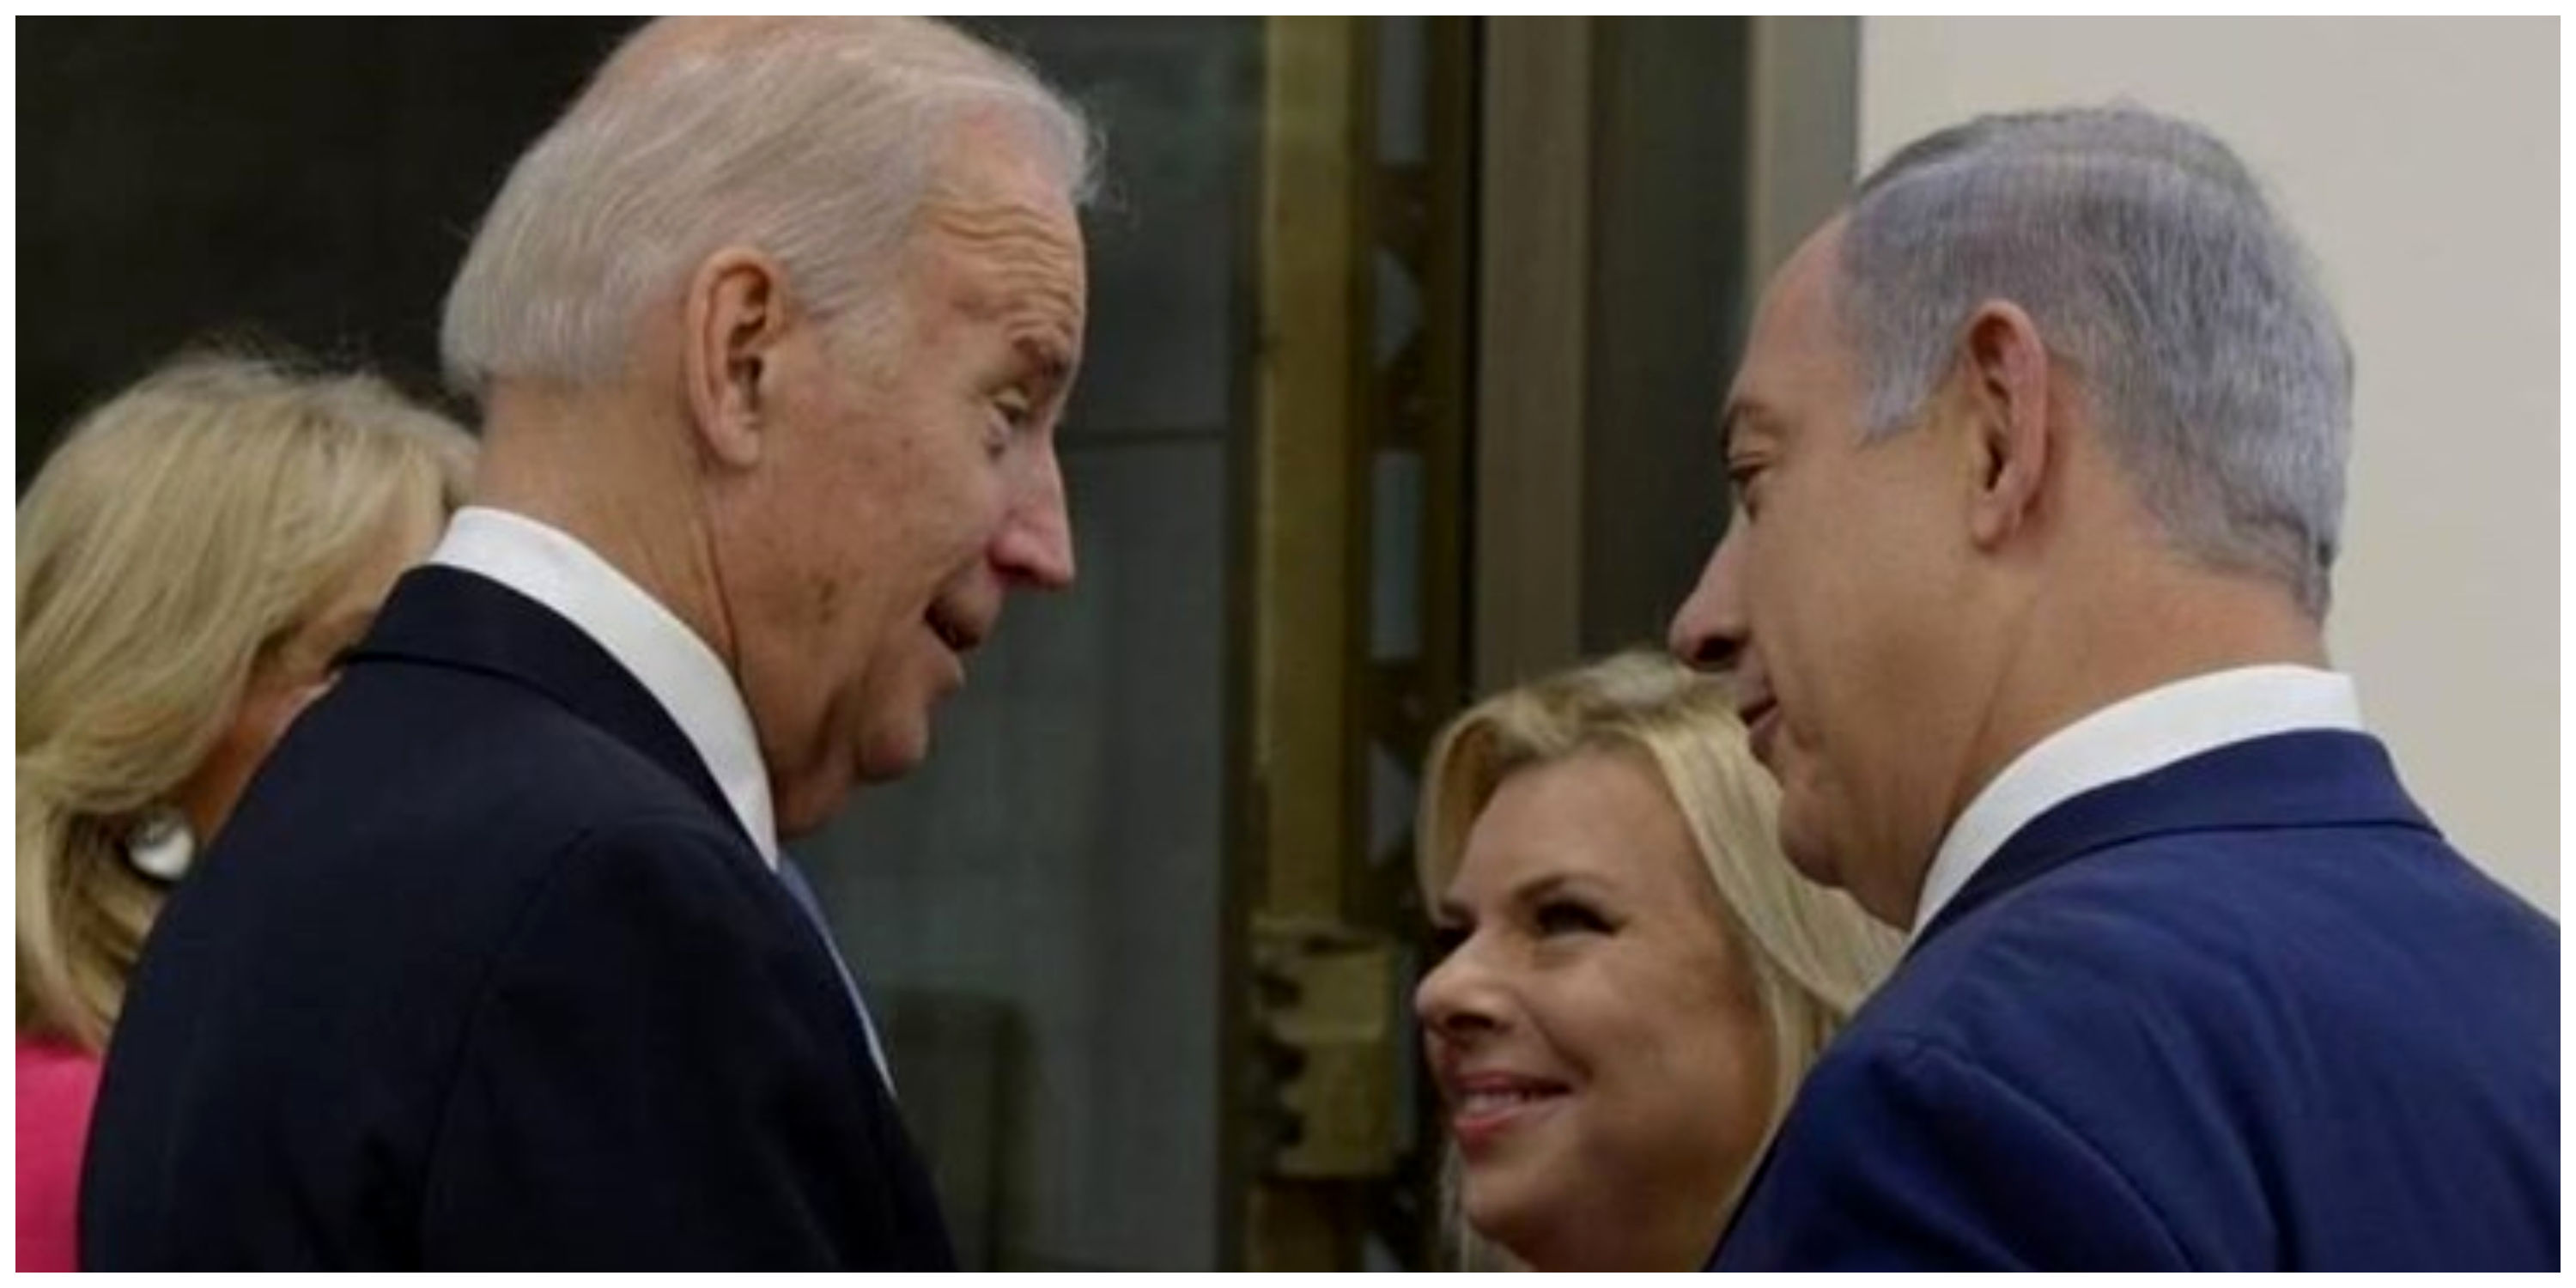 سفر نخست وزیر اسرائیل به واشنگتن در هاله ای از ابهام/ بایدن از نتانیاهو دعوت کرده است؟